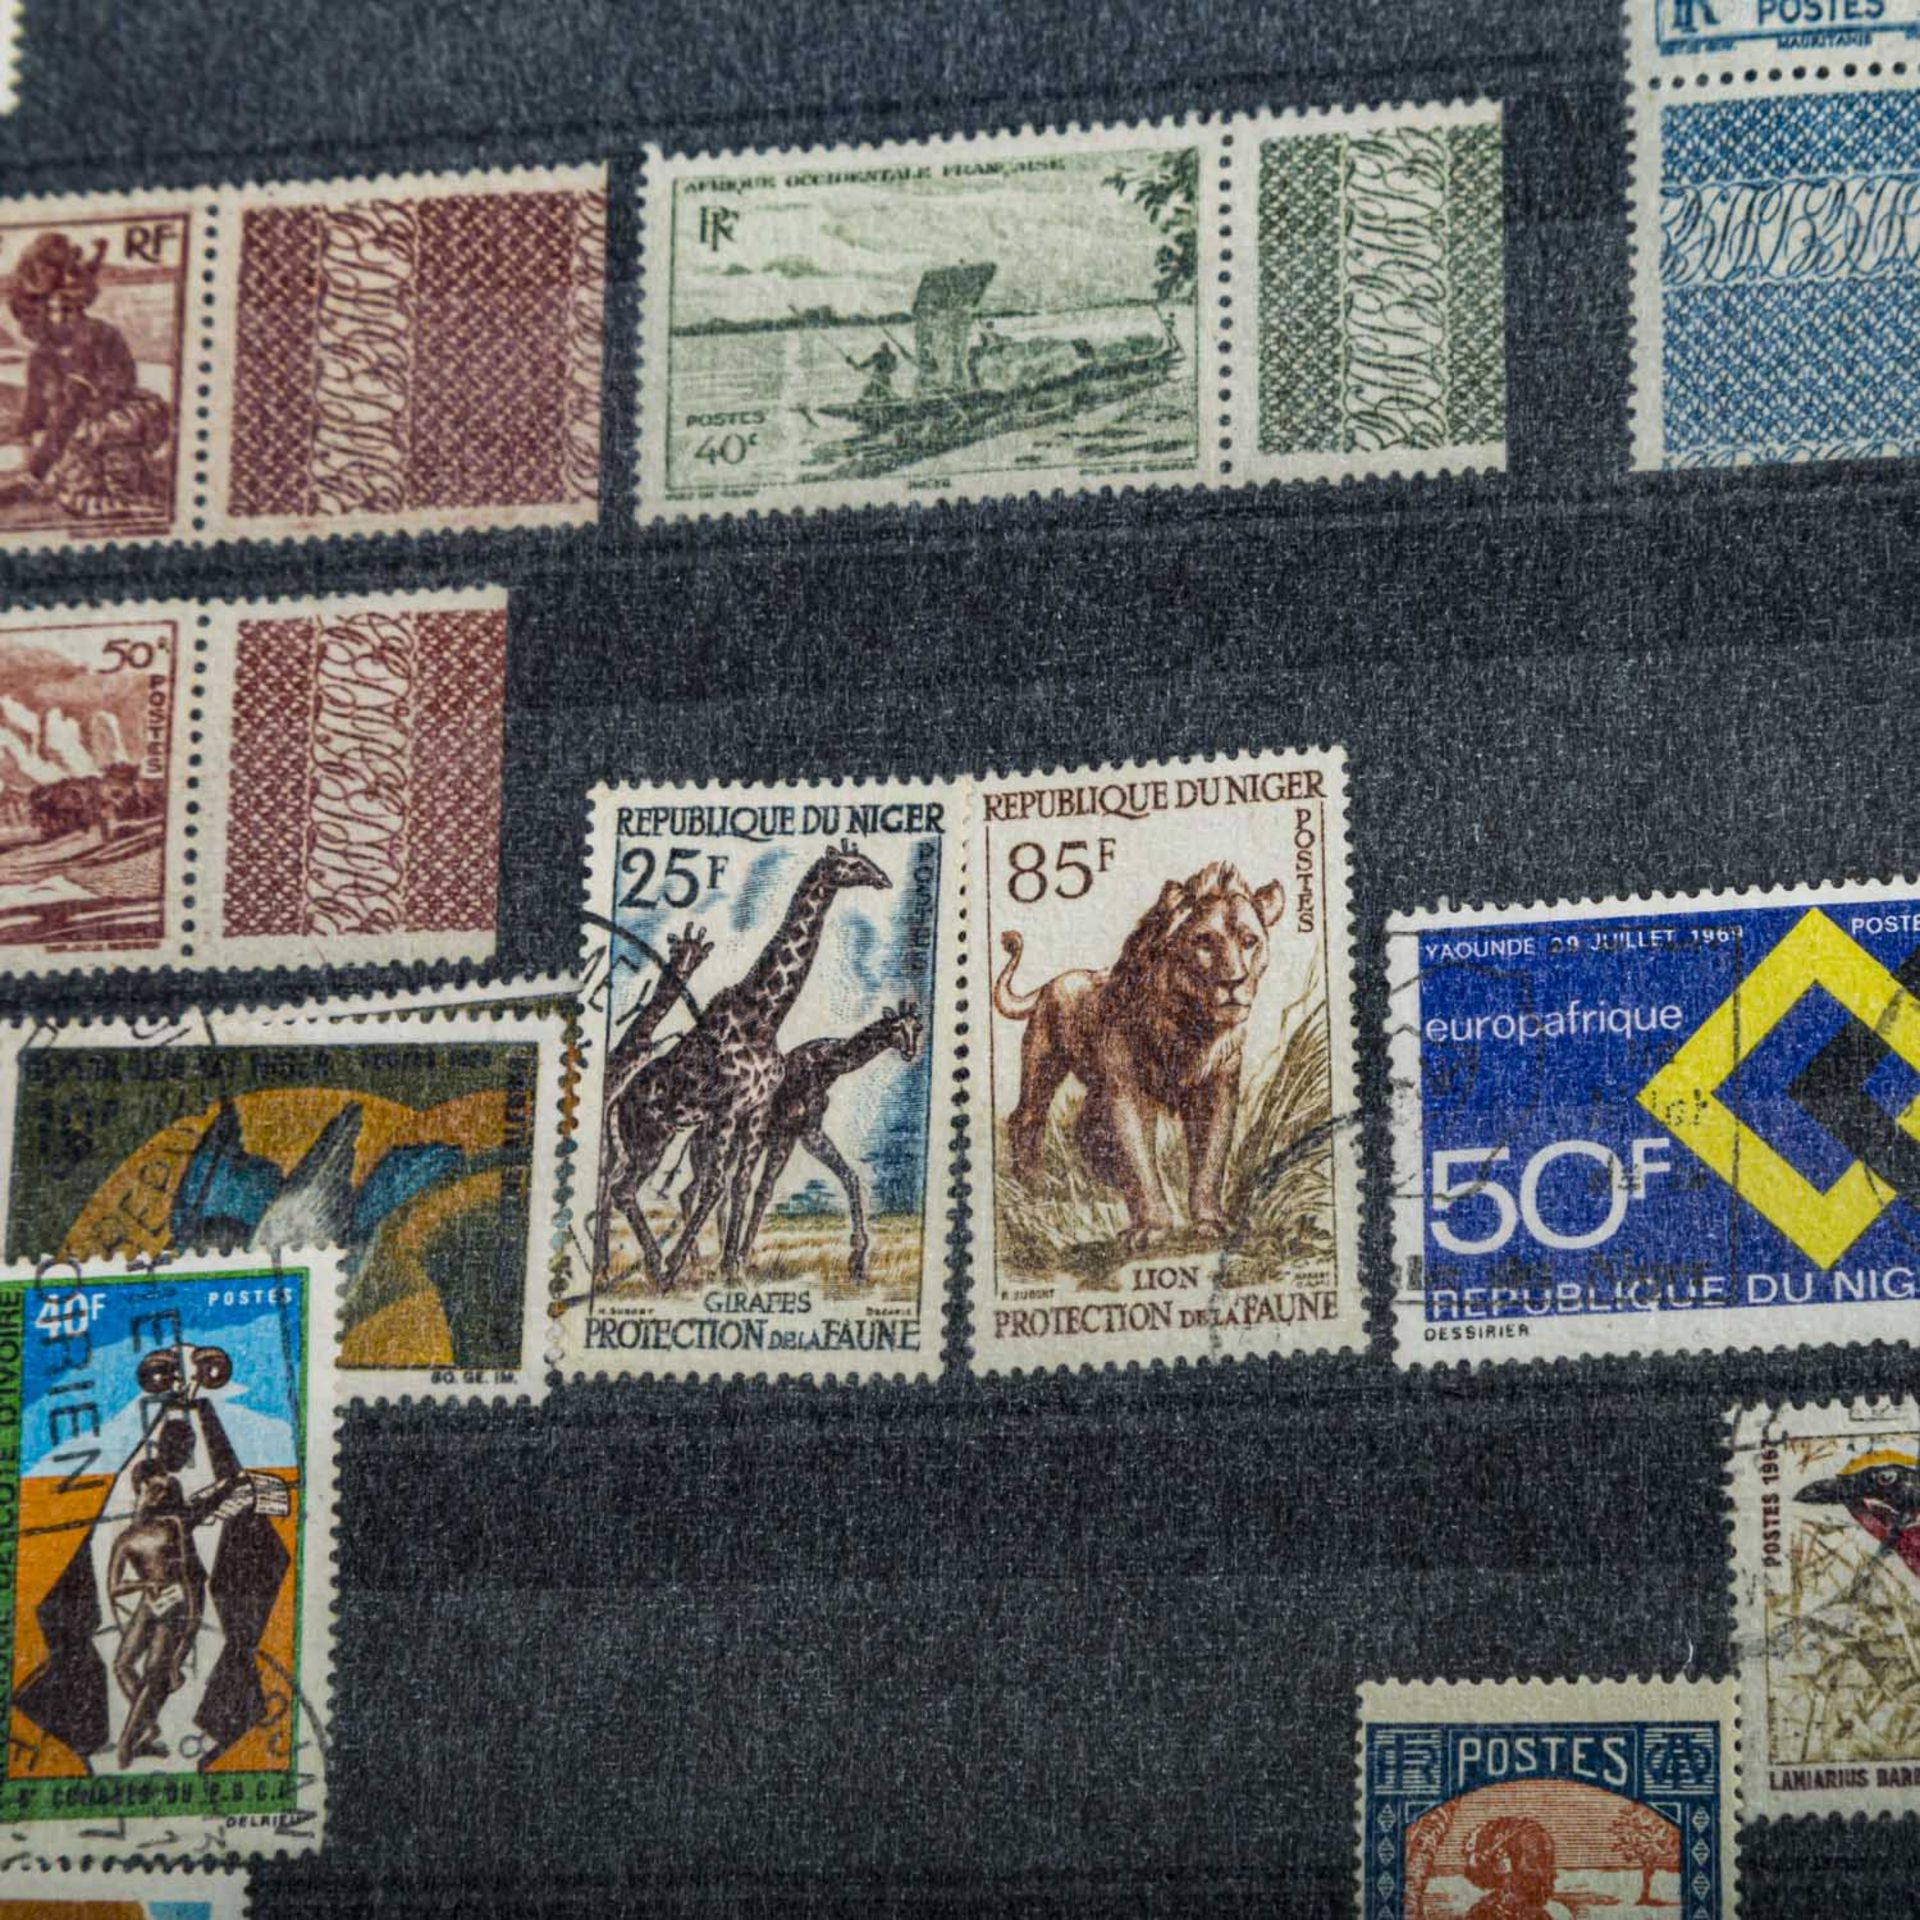 Rest einer größeren Einlieferung,darunter Dt. Reich Infla Bögen, afrikanische Briefmarken, etc. - Bild 5 aus 8